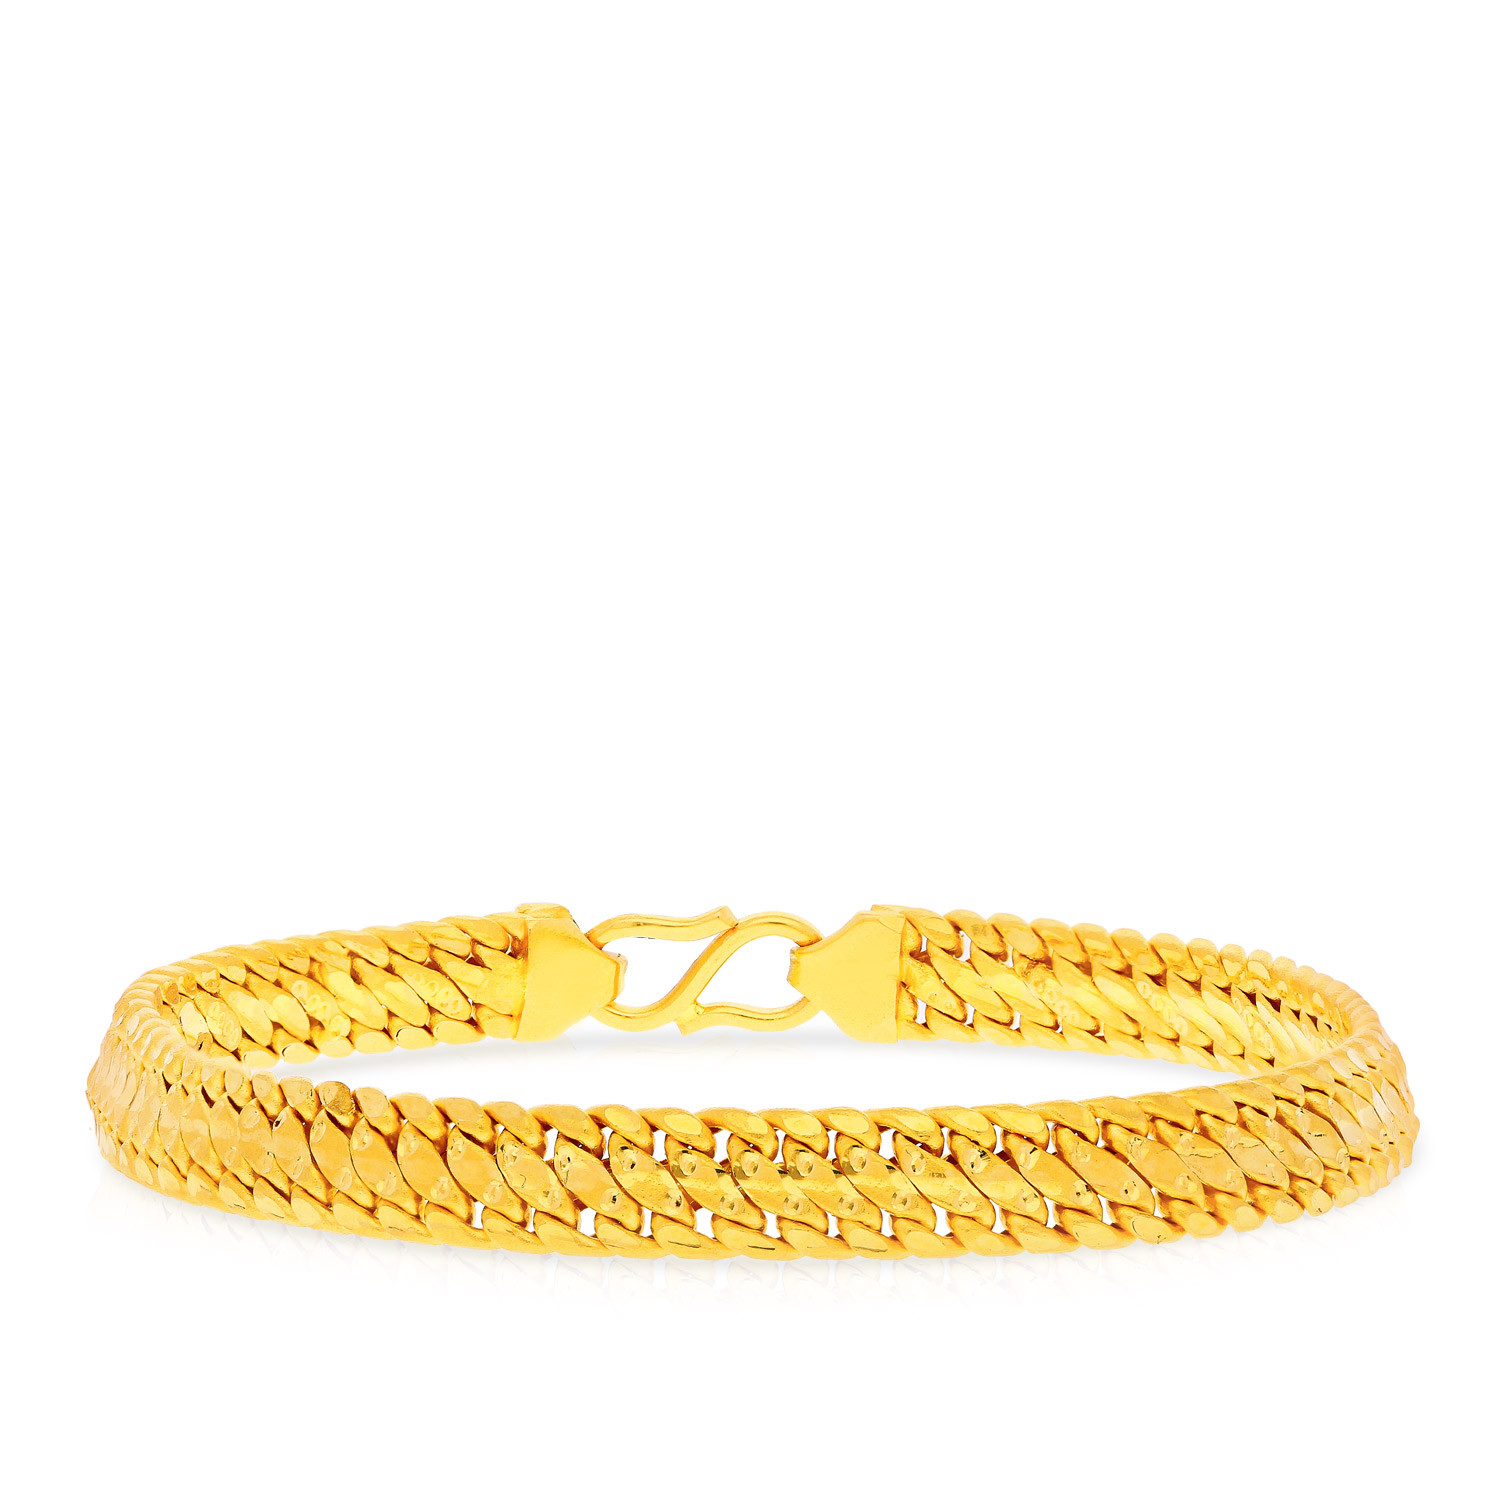 Malabar Gold Bracelet Designs For Men